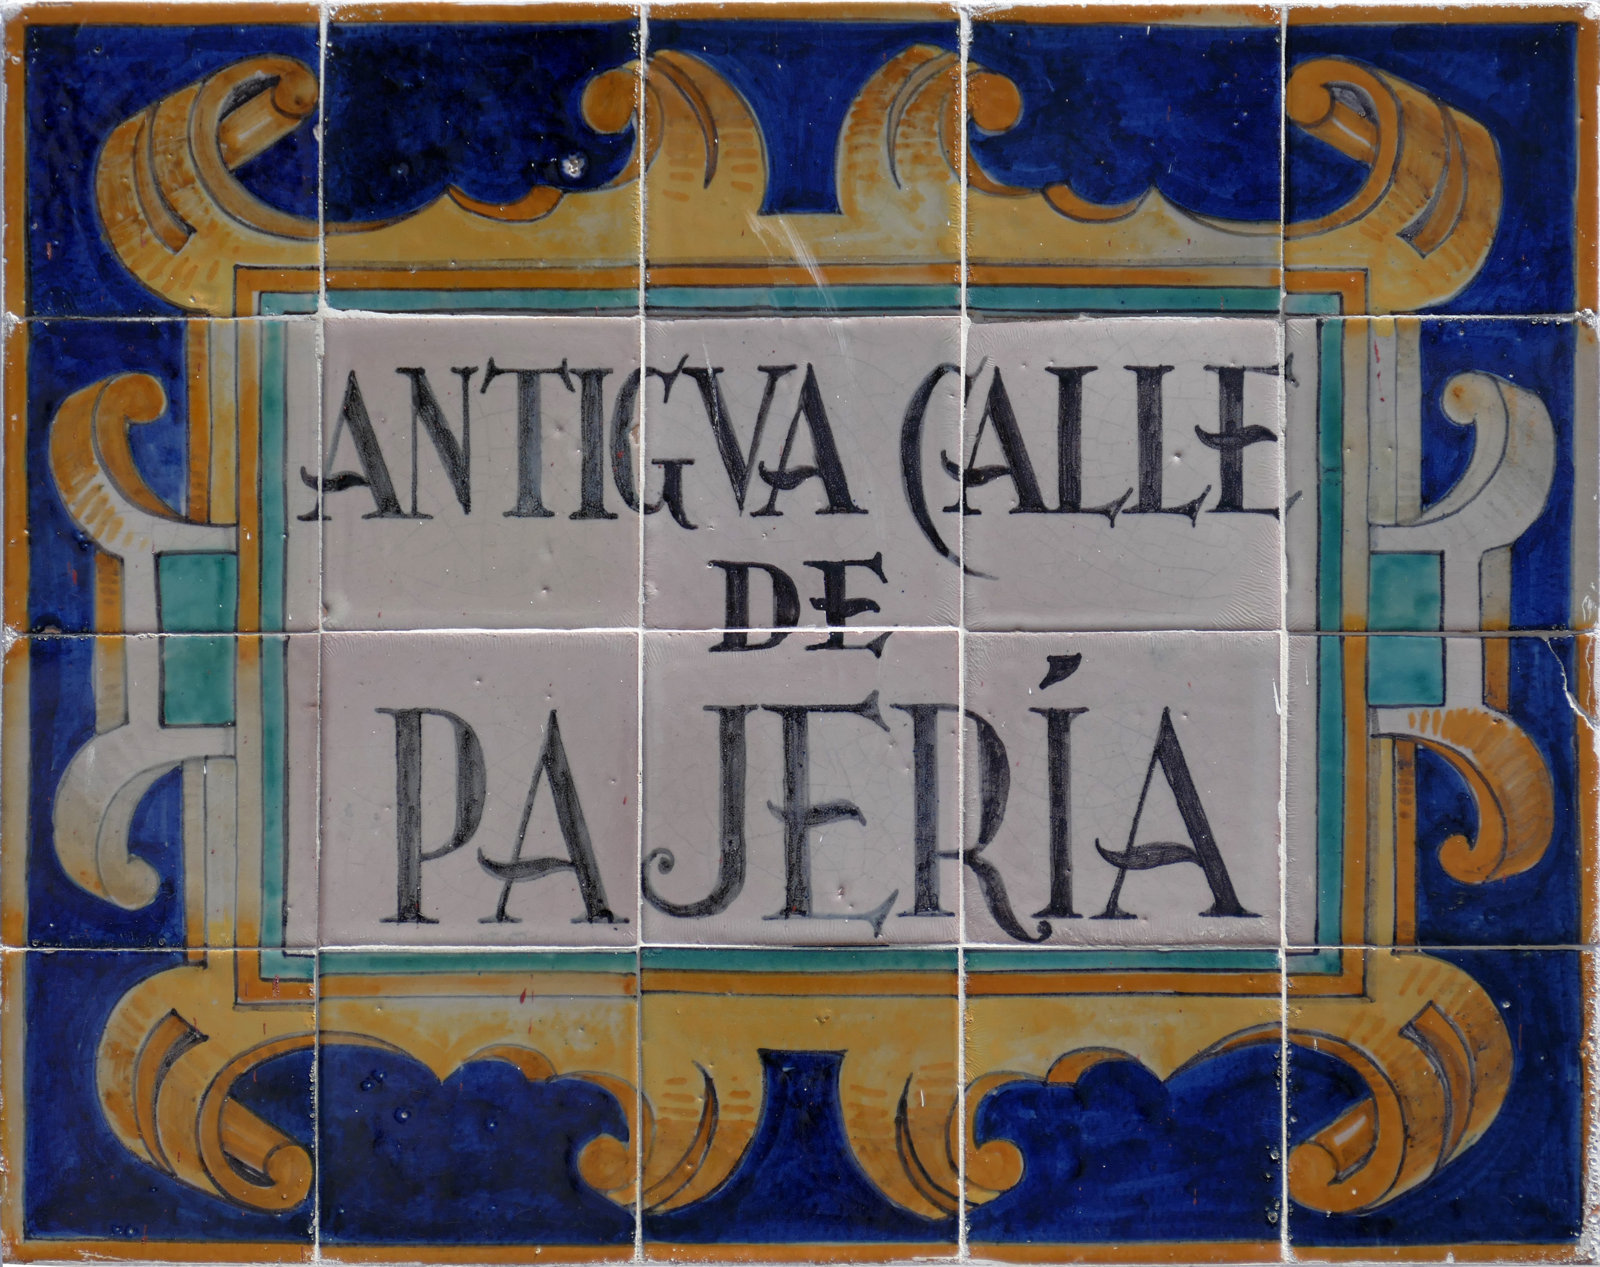 00962. Rótulo de la antigua calle de Pajería. Sevilla.